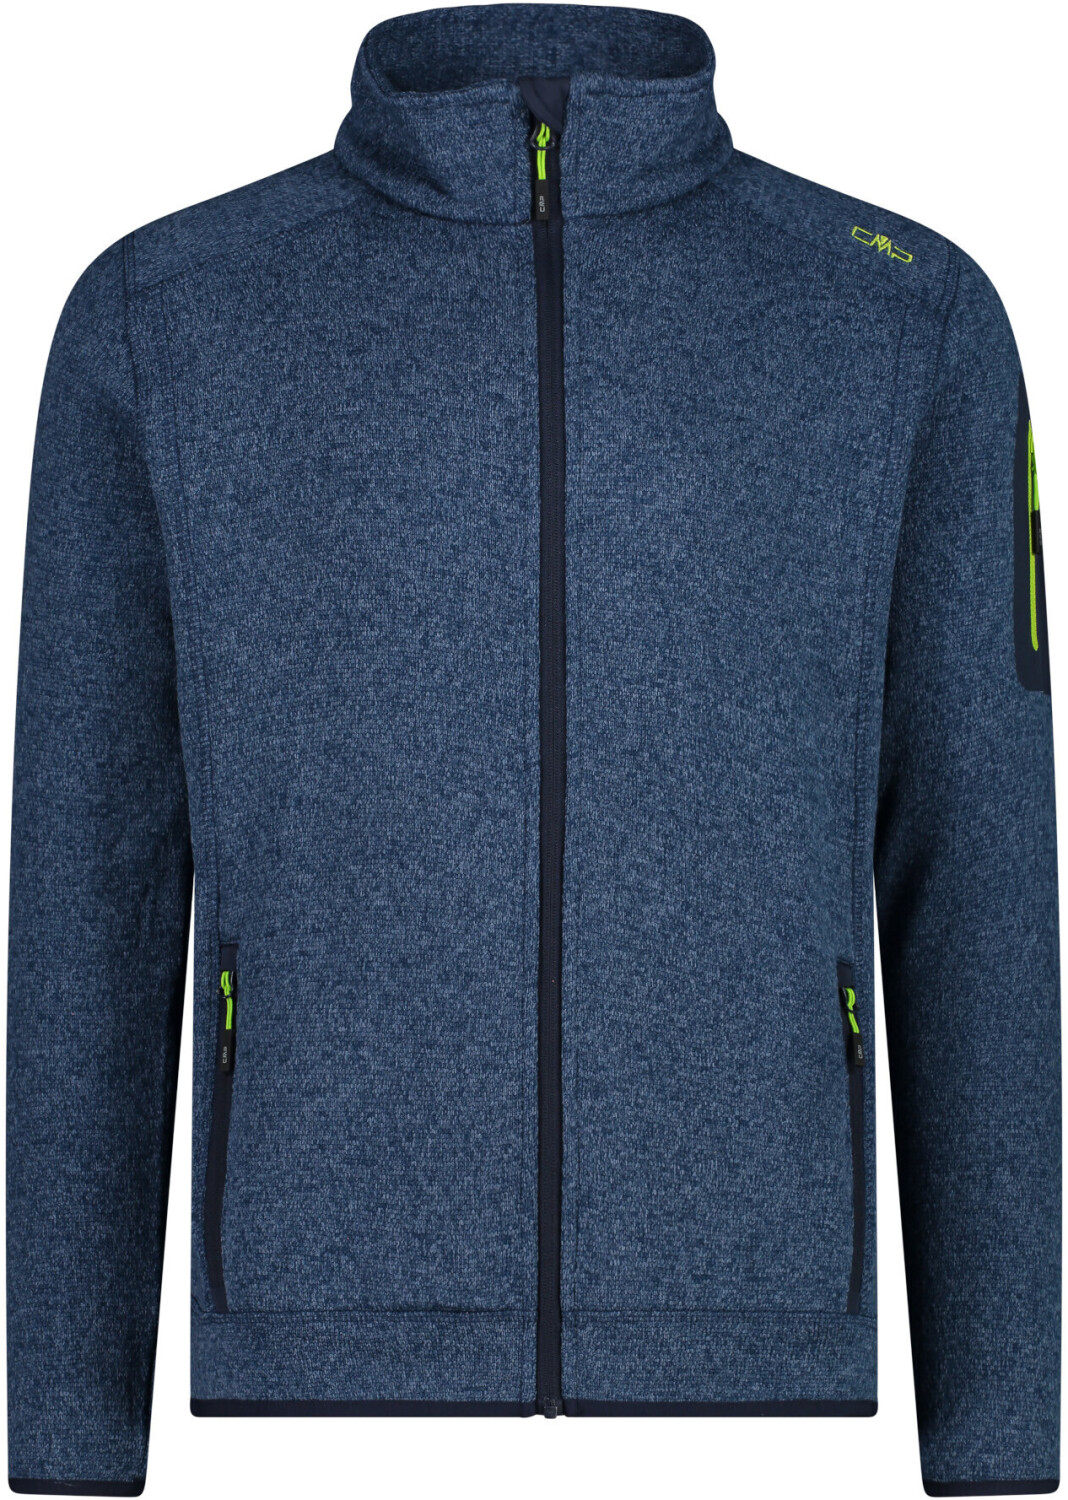 39,99 bei ab € Knit-Tech blue-limegreen CMP Preisvergleich Jacket | (3H60747)